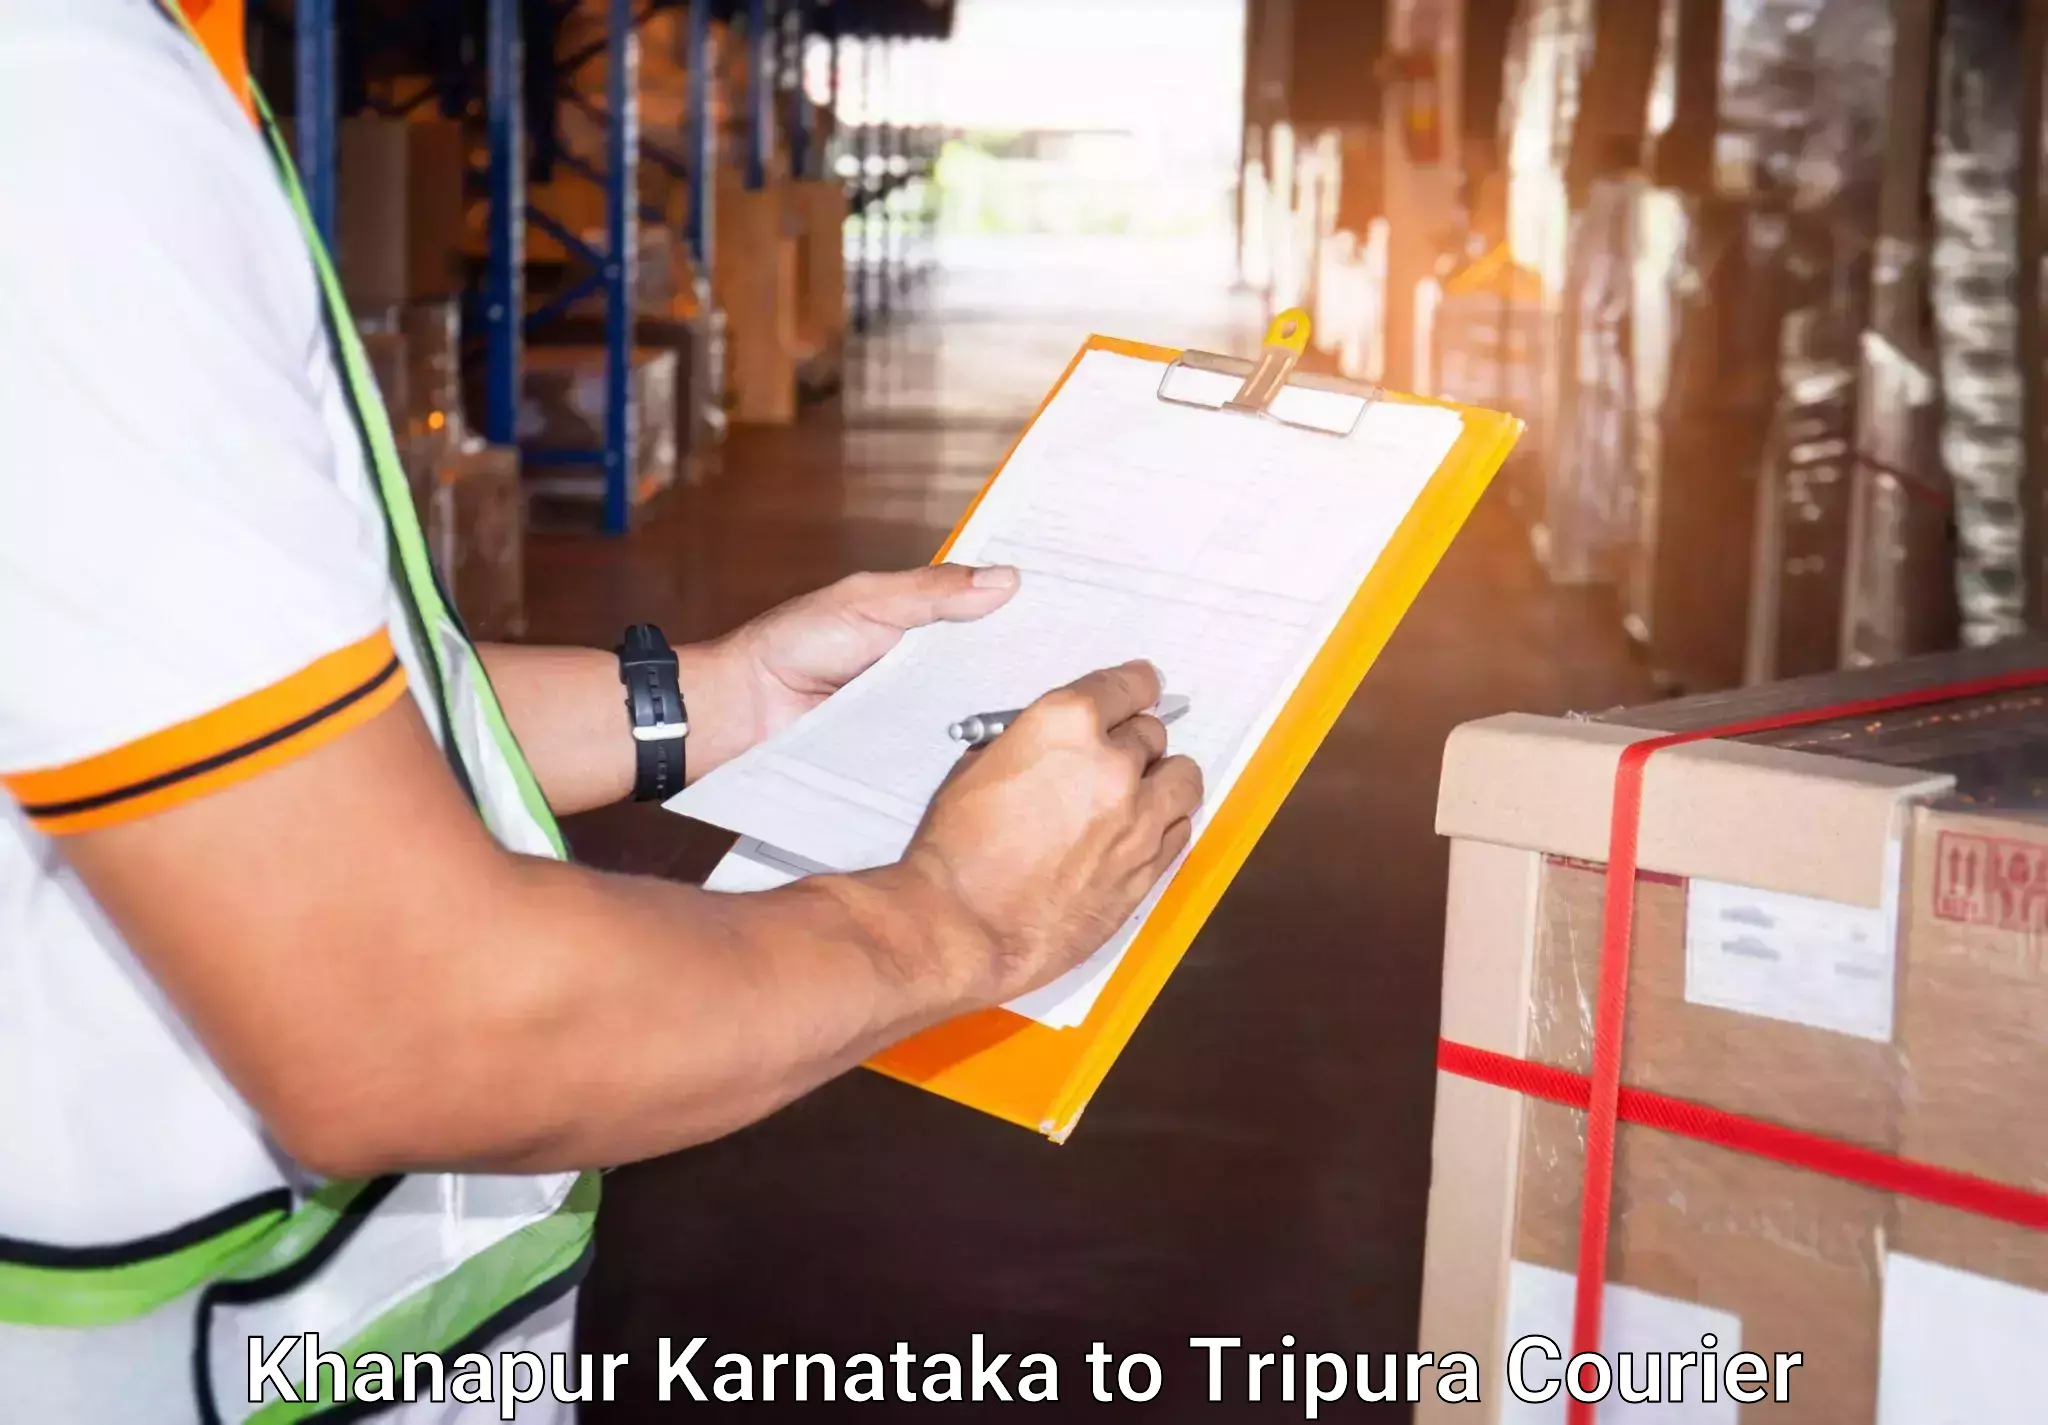 Luggage transport company Khanapur Karnataka to Dharmanagar